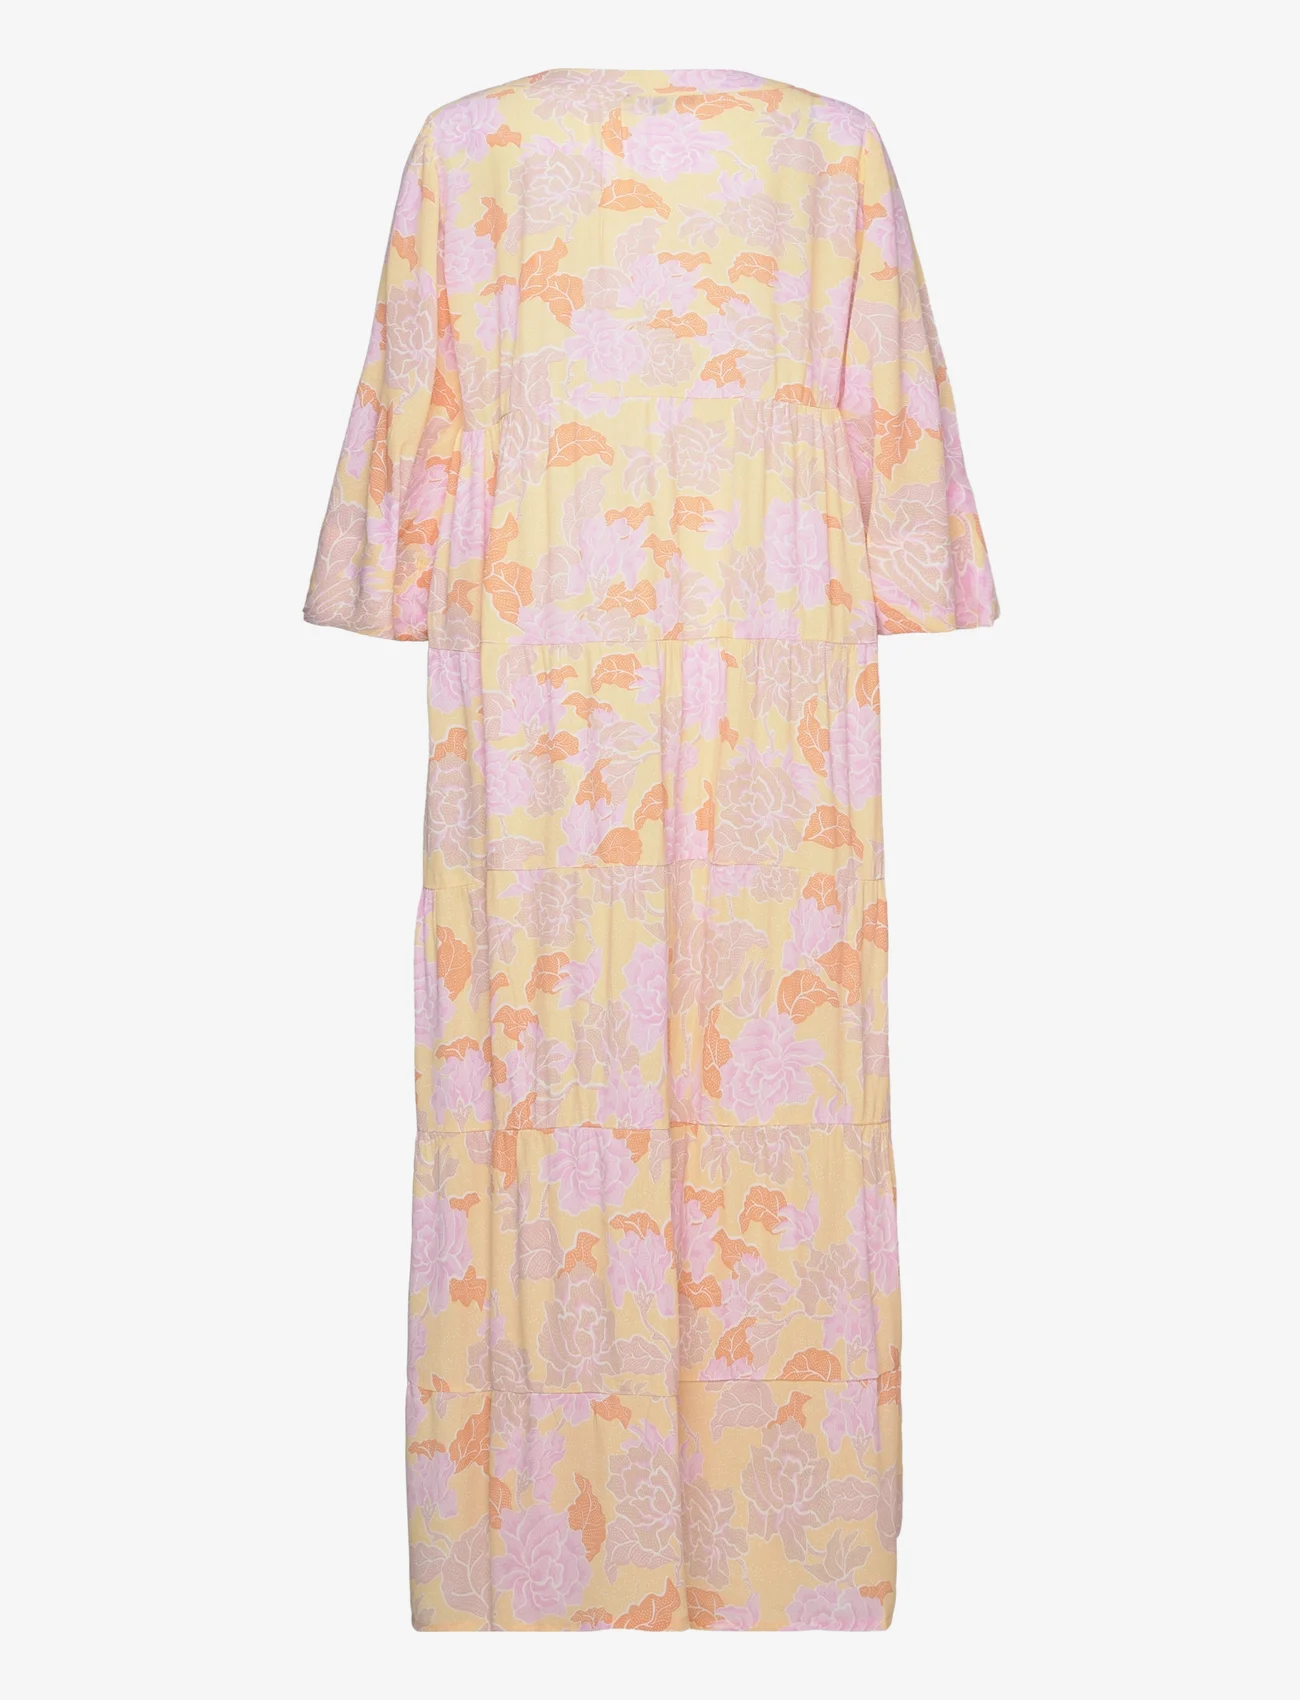 Ilse Jacobsen - Long Dress - summer dresses - custard - 1